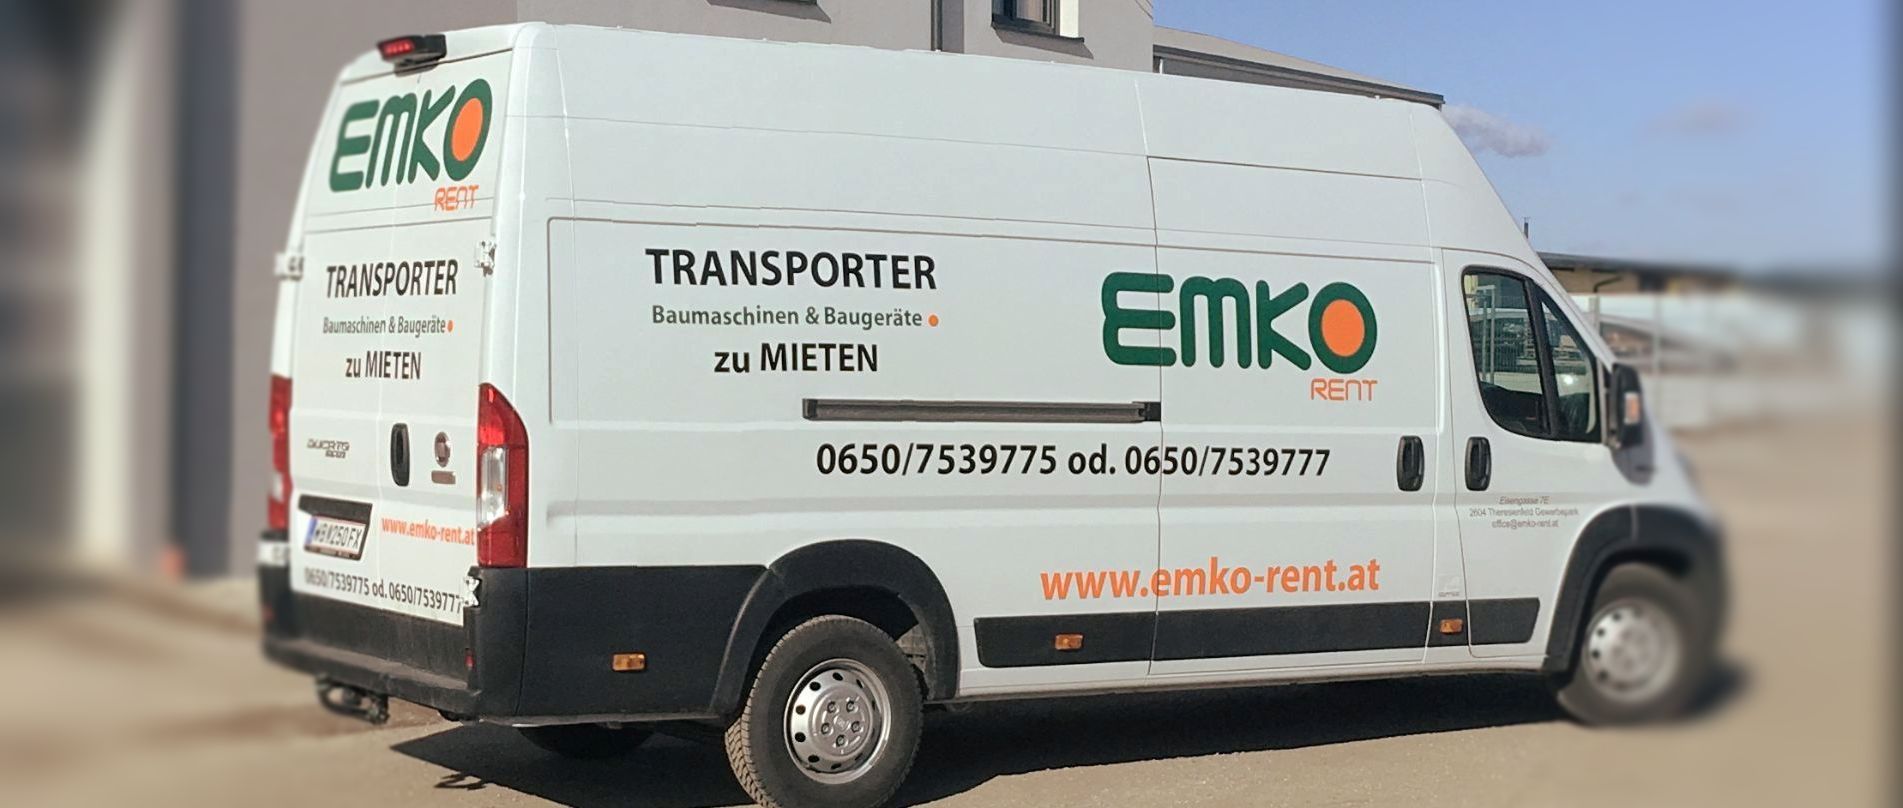 Transporter mieten, Niederösterreich